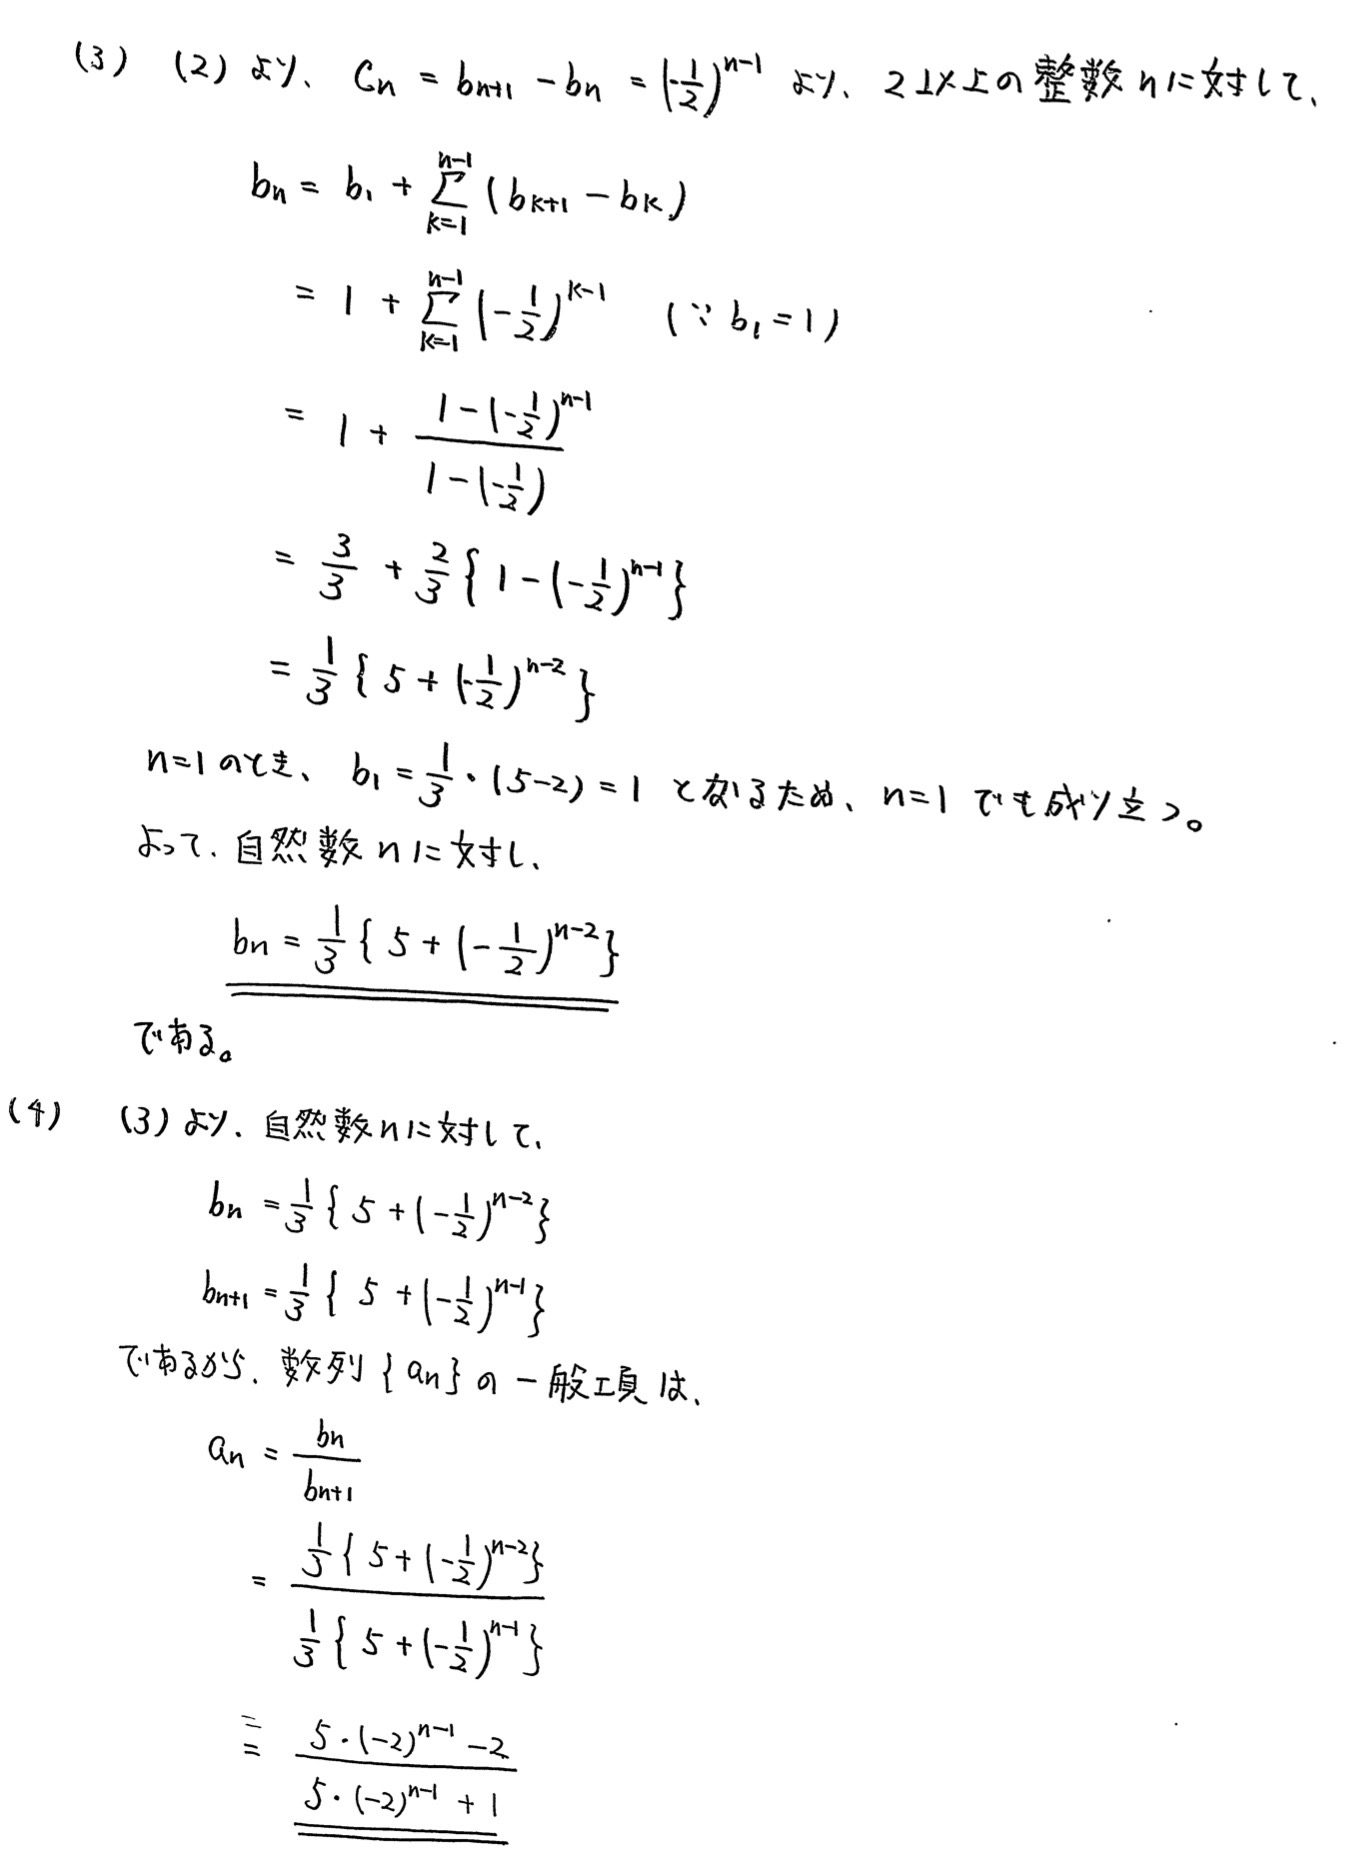 和歌山大学入試文系数学2022年(令和4年)過去問題(解答・解説)